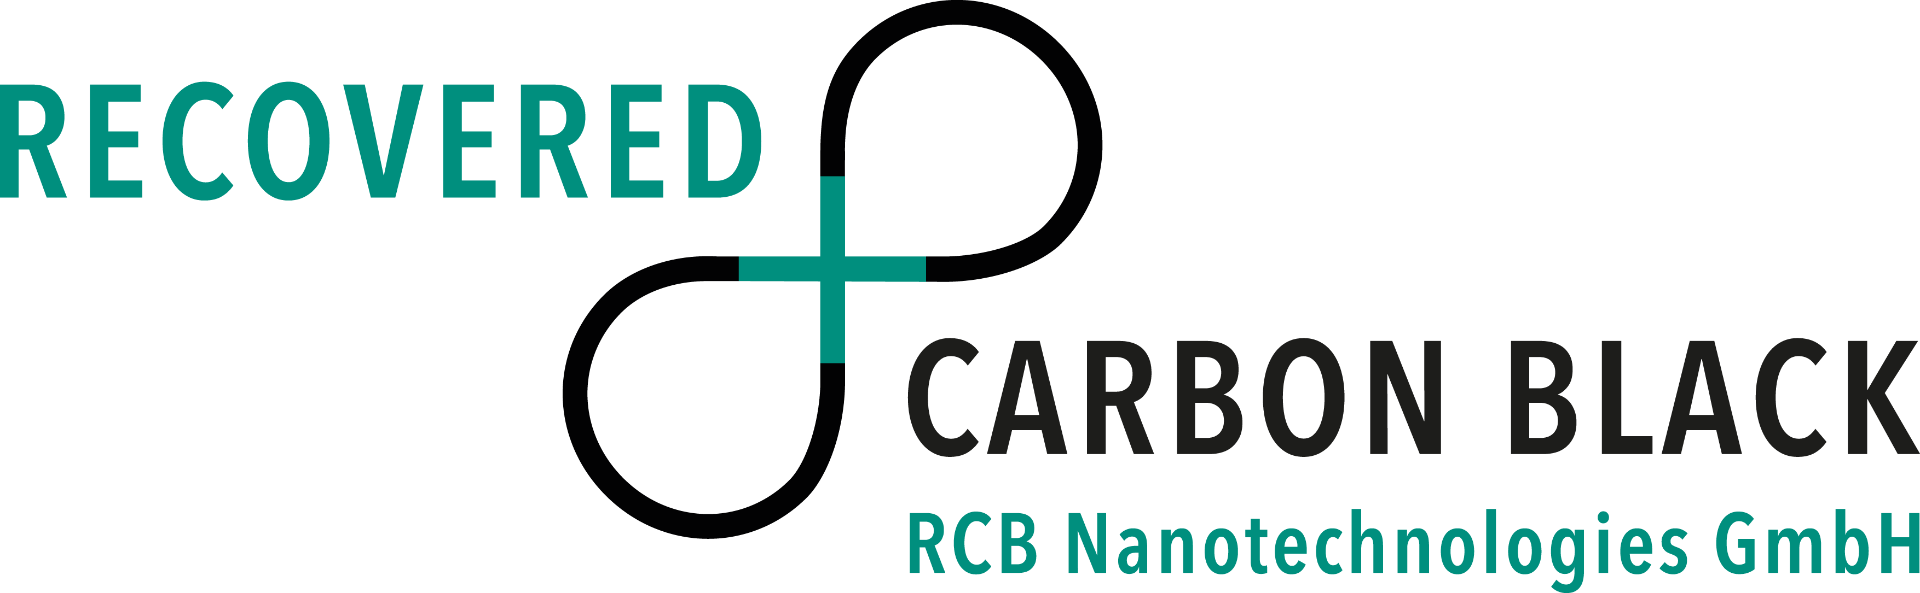 RCB_logo_4c_pos_GmbH.png